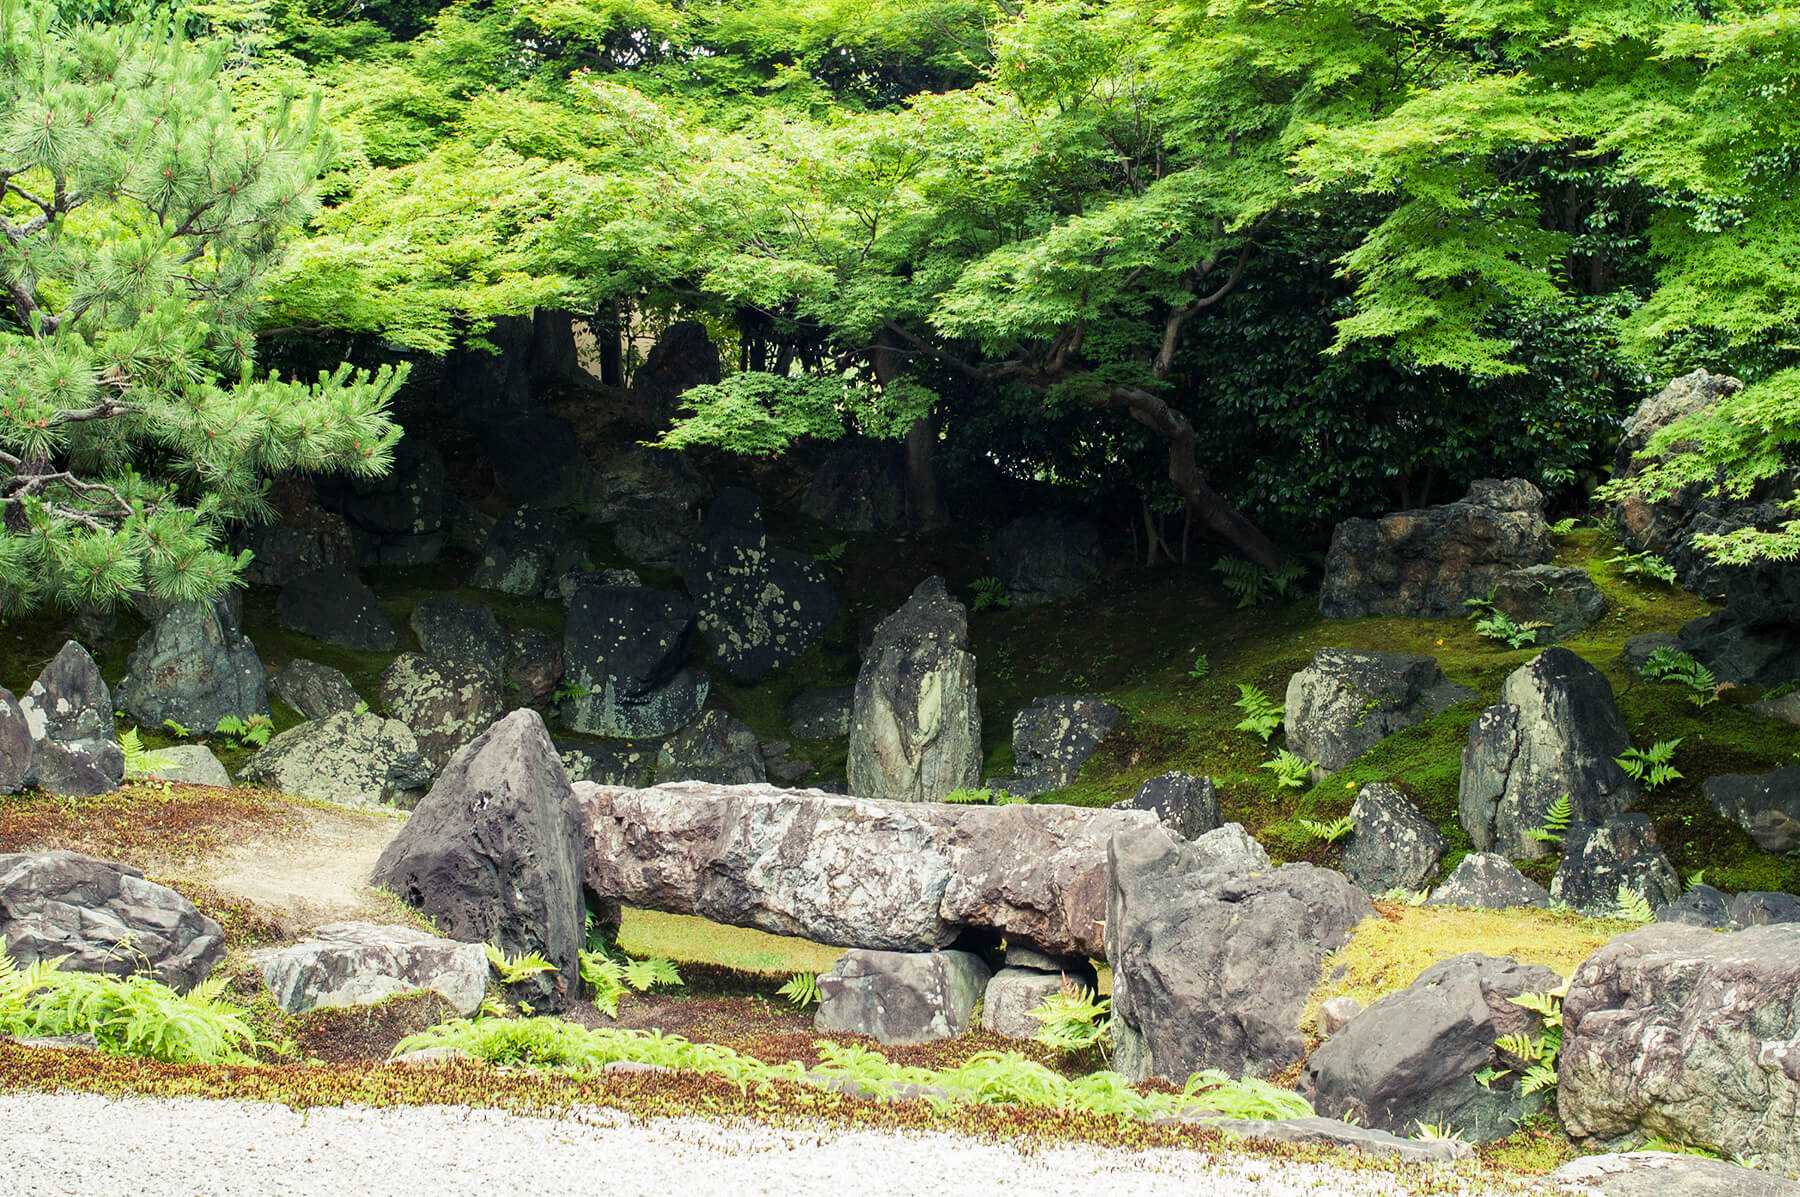 
          京都「高台寺圓徳院」の庭園写真1
      